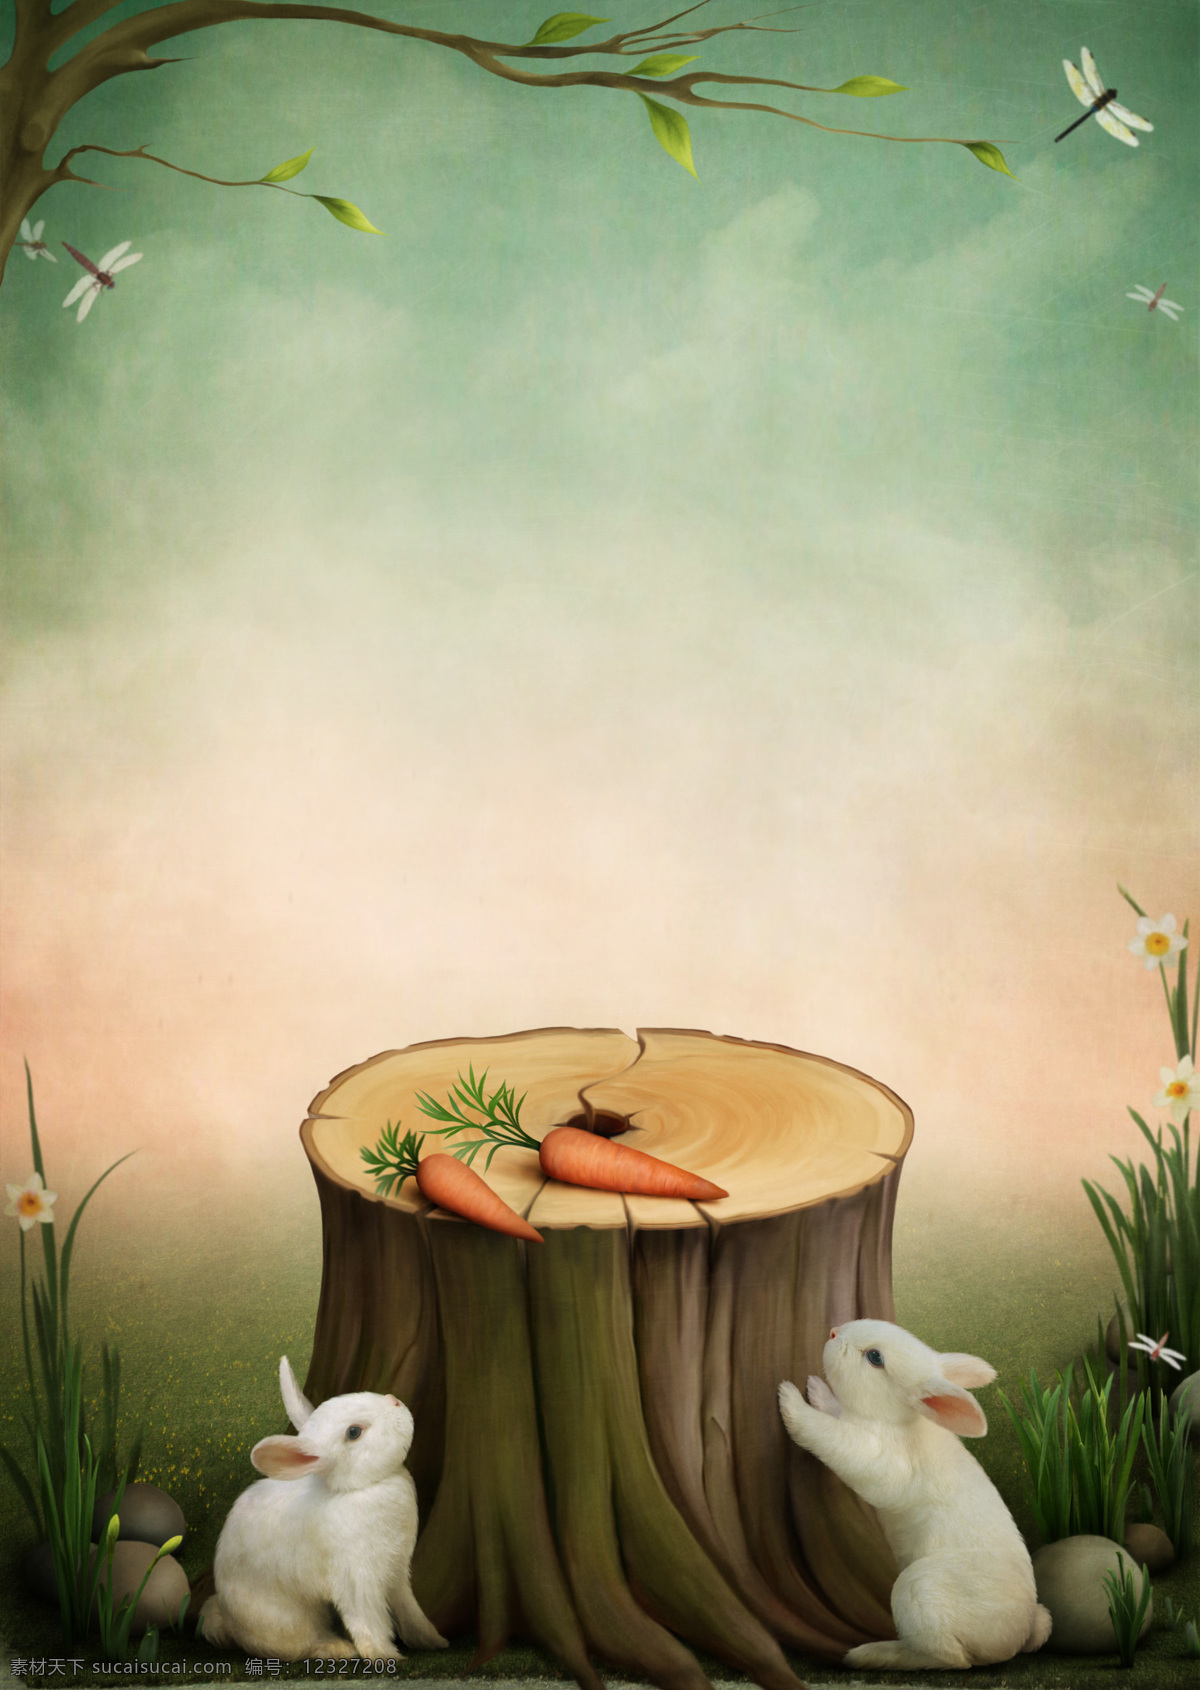 童话故事 童话 兔子树桩 胡萝卜 童话背景 相片模板 儿童风格 梦幻 风景漫画 动漫动画 童话风格